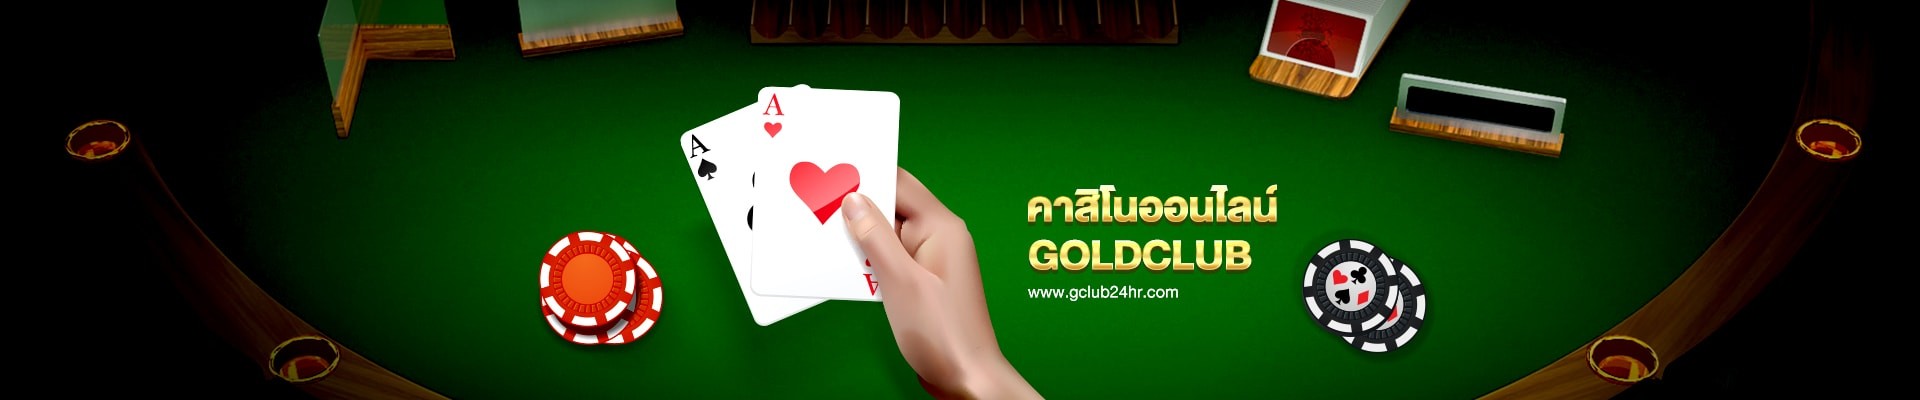 gclub24hr_casino_online_goldclub